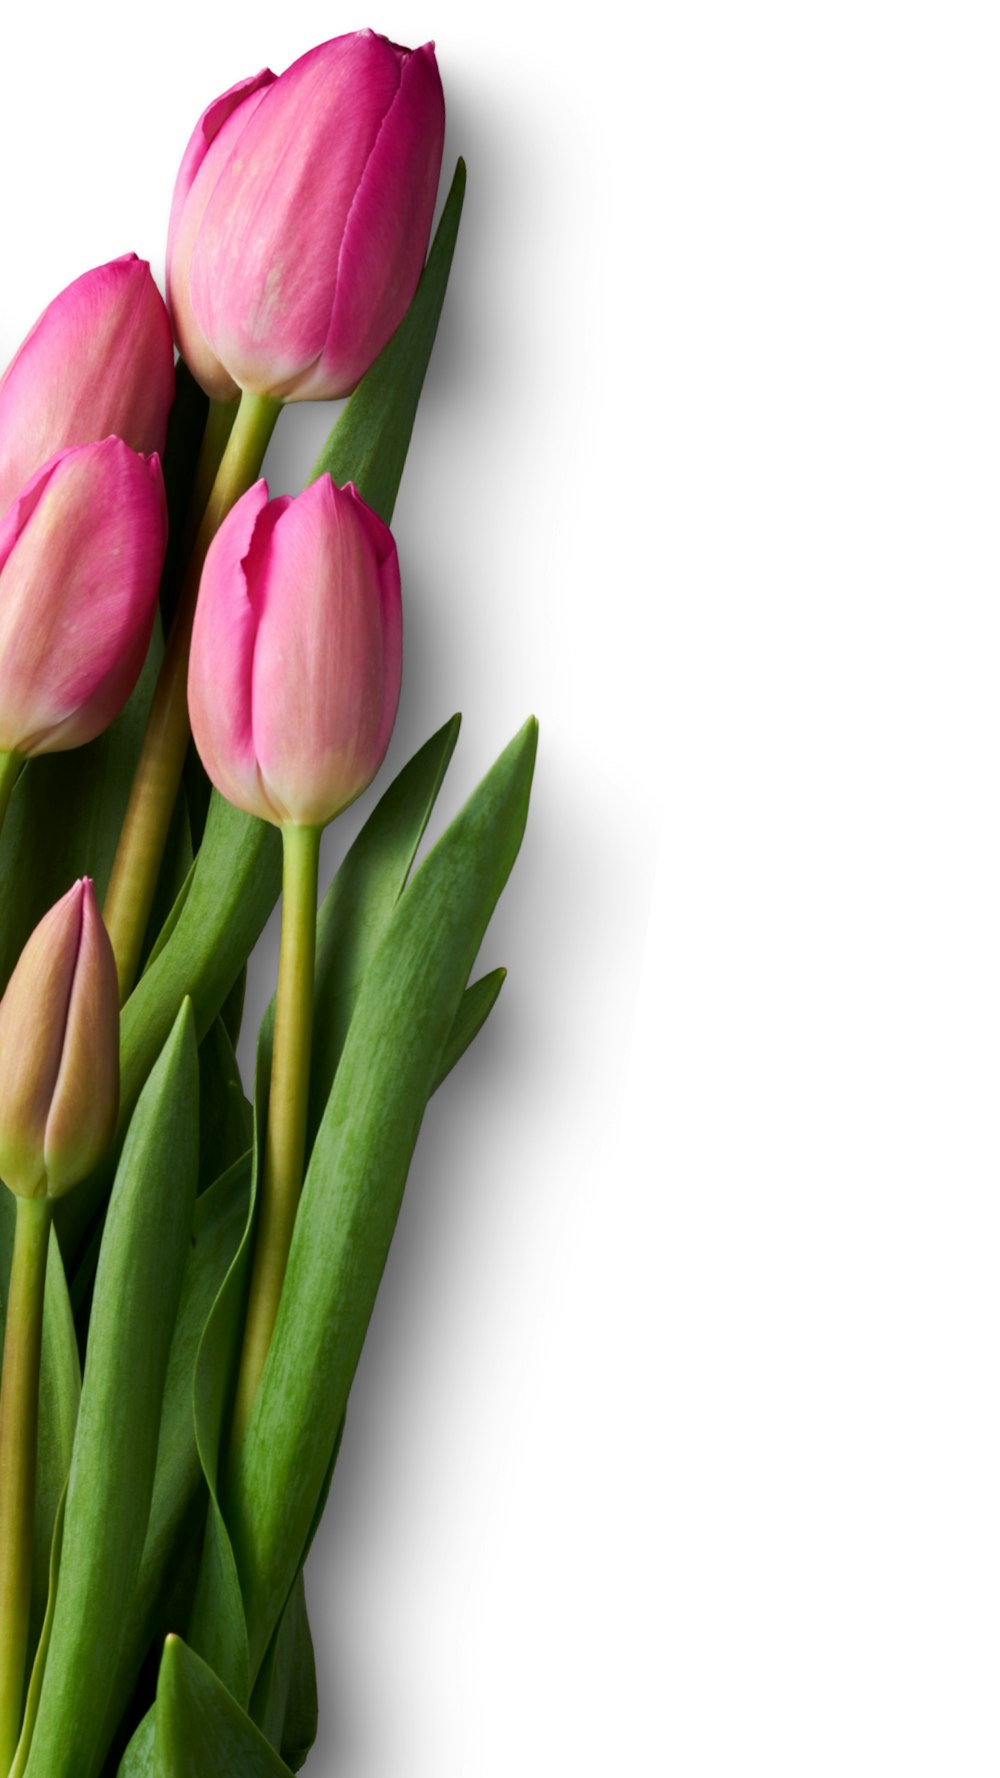 tulipas cor-de-rosa na superfície branca